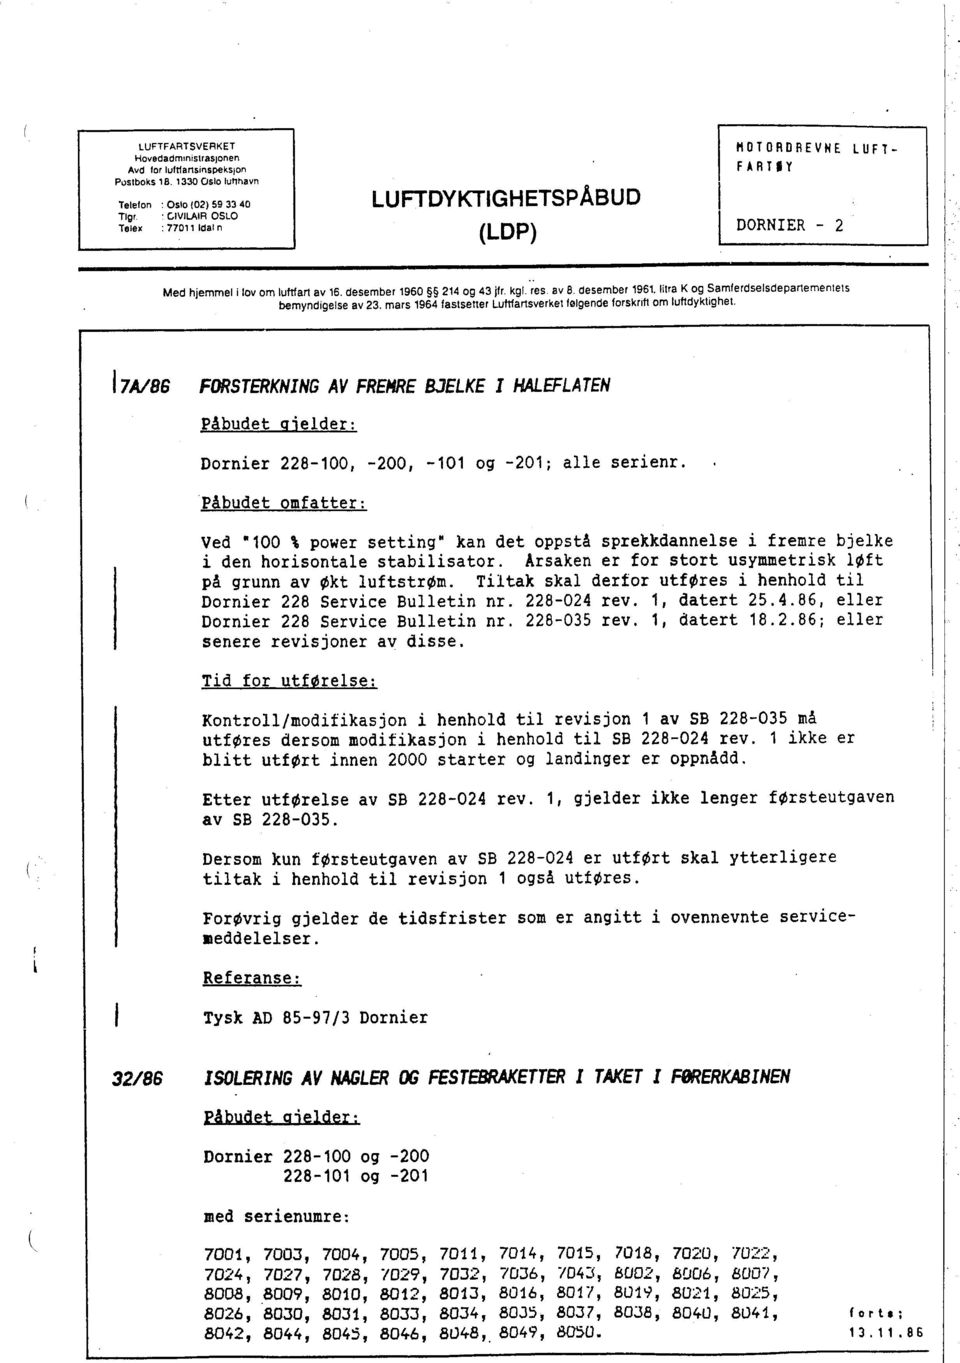 lilra K og Samferdselsdepartementets bemyndigelse av 23. mars 1964 fastsetter Lufnartsverket følgende forskrift om luftdyktìghei.